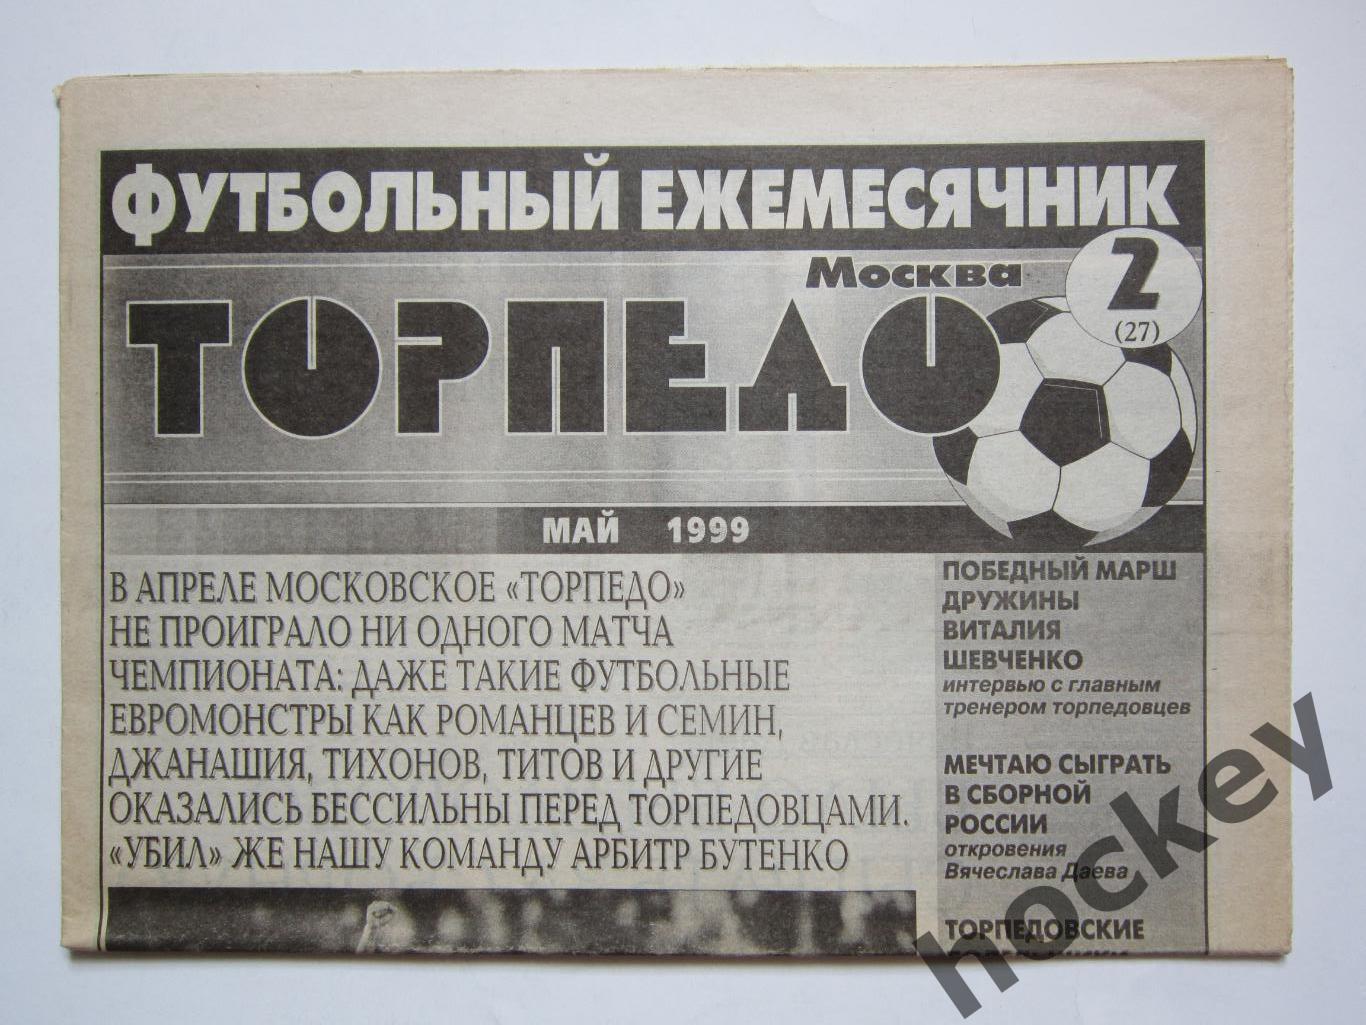 Футбольный ежемесячник Торпедо (Москва). №2 (27). 1999 год (май)